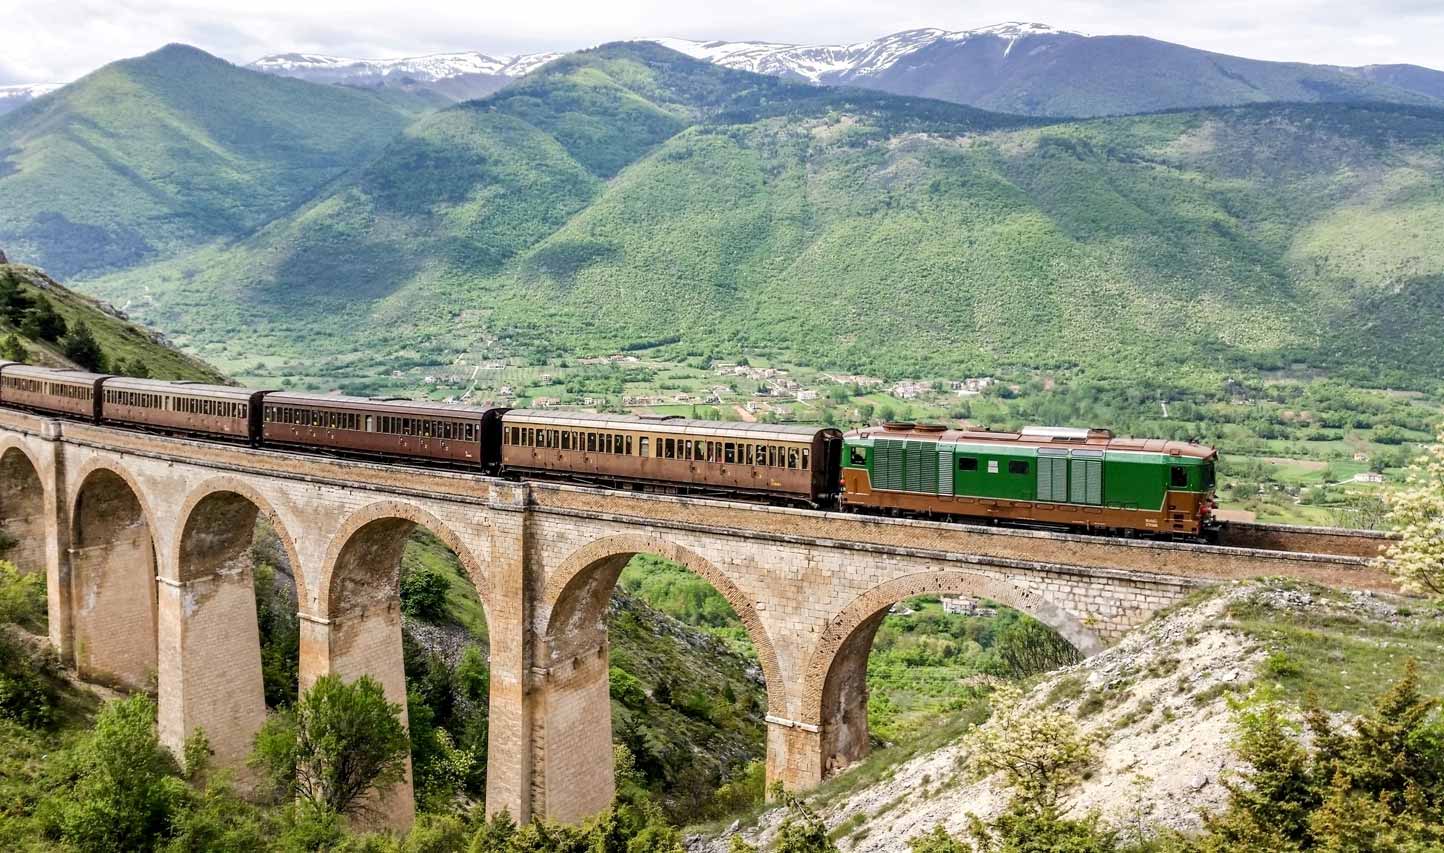 Tornano i treni storici in Campania: dal 5 maggio anche l’Archeotreno per Pompei, Paestum e Velia